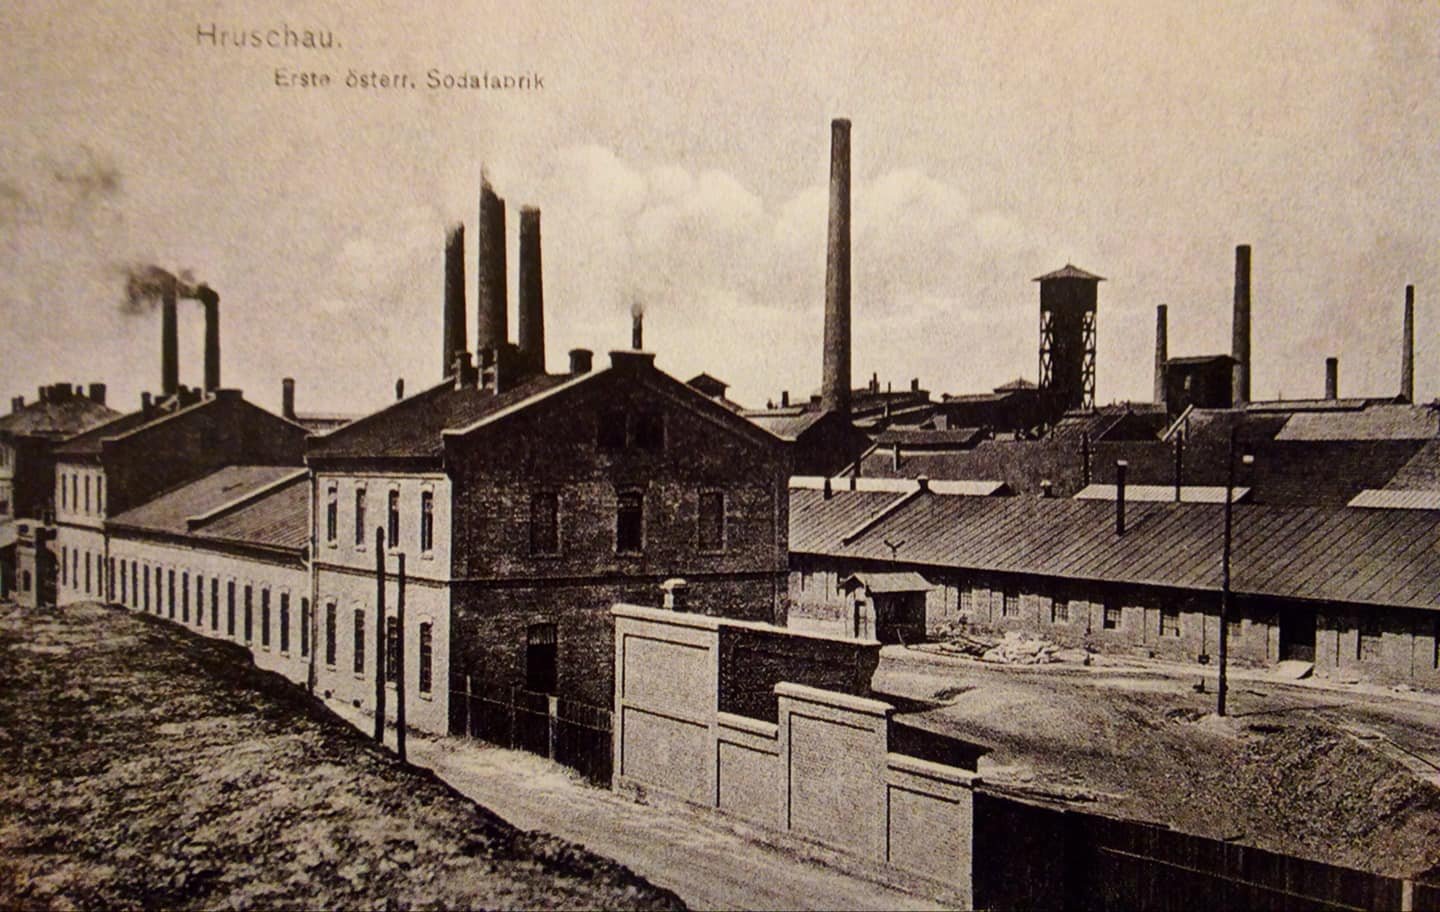 ↑ Pohled na hrušovskou továrnu na sodu 